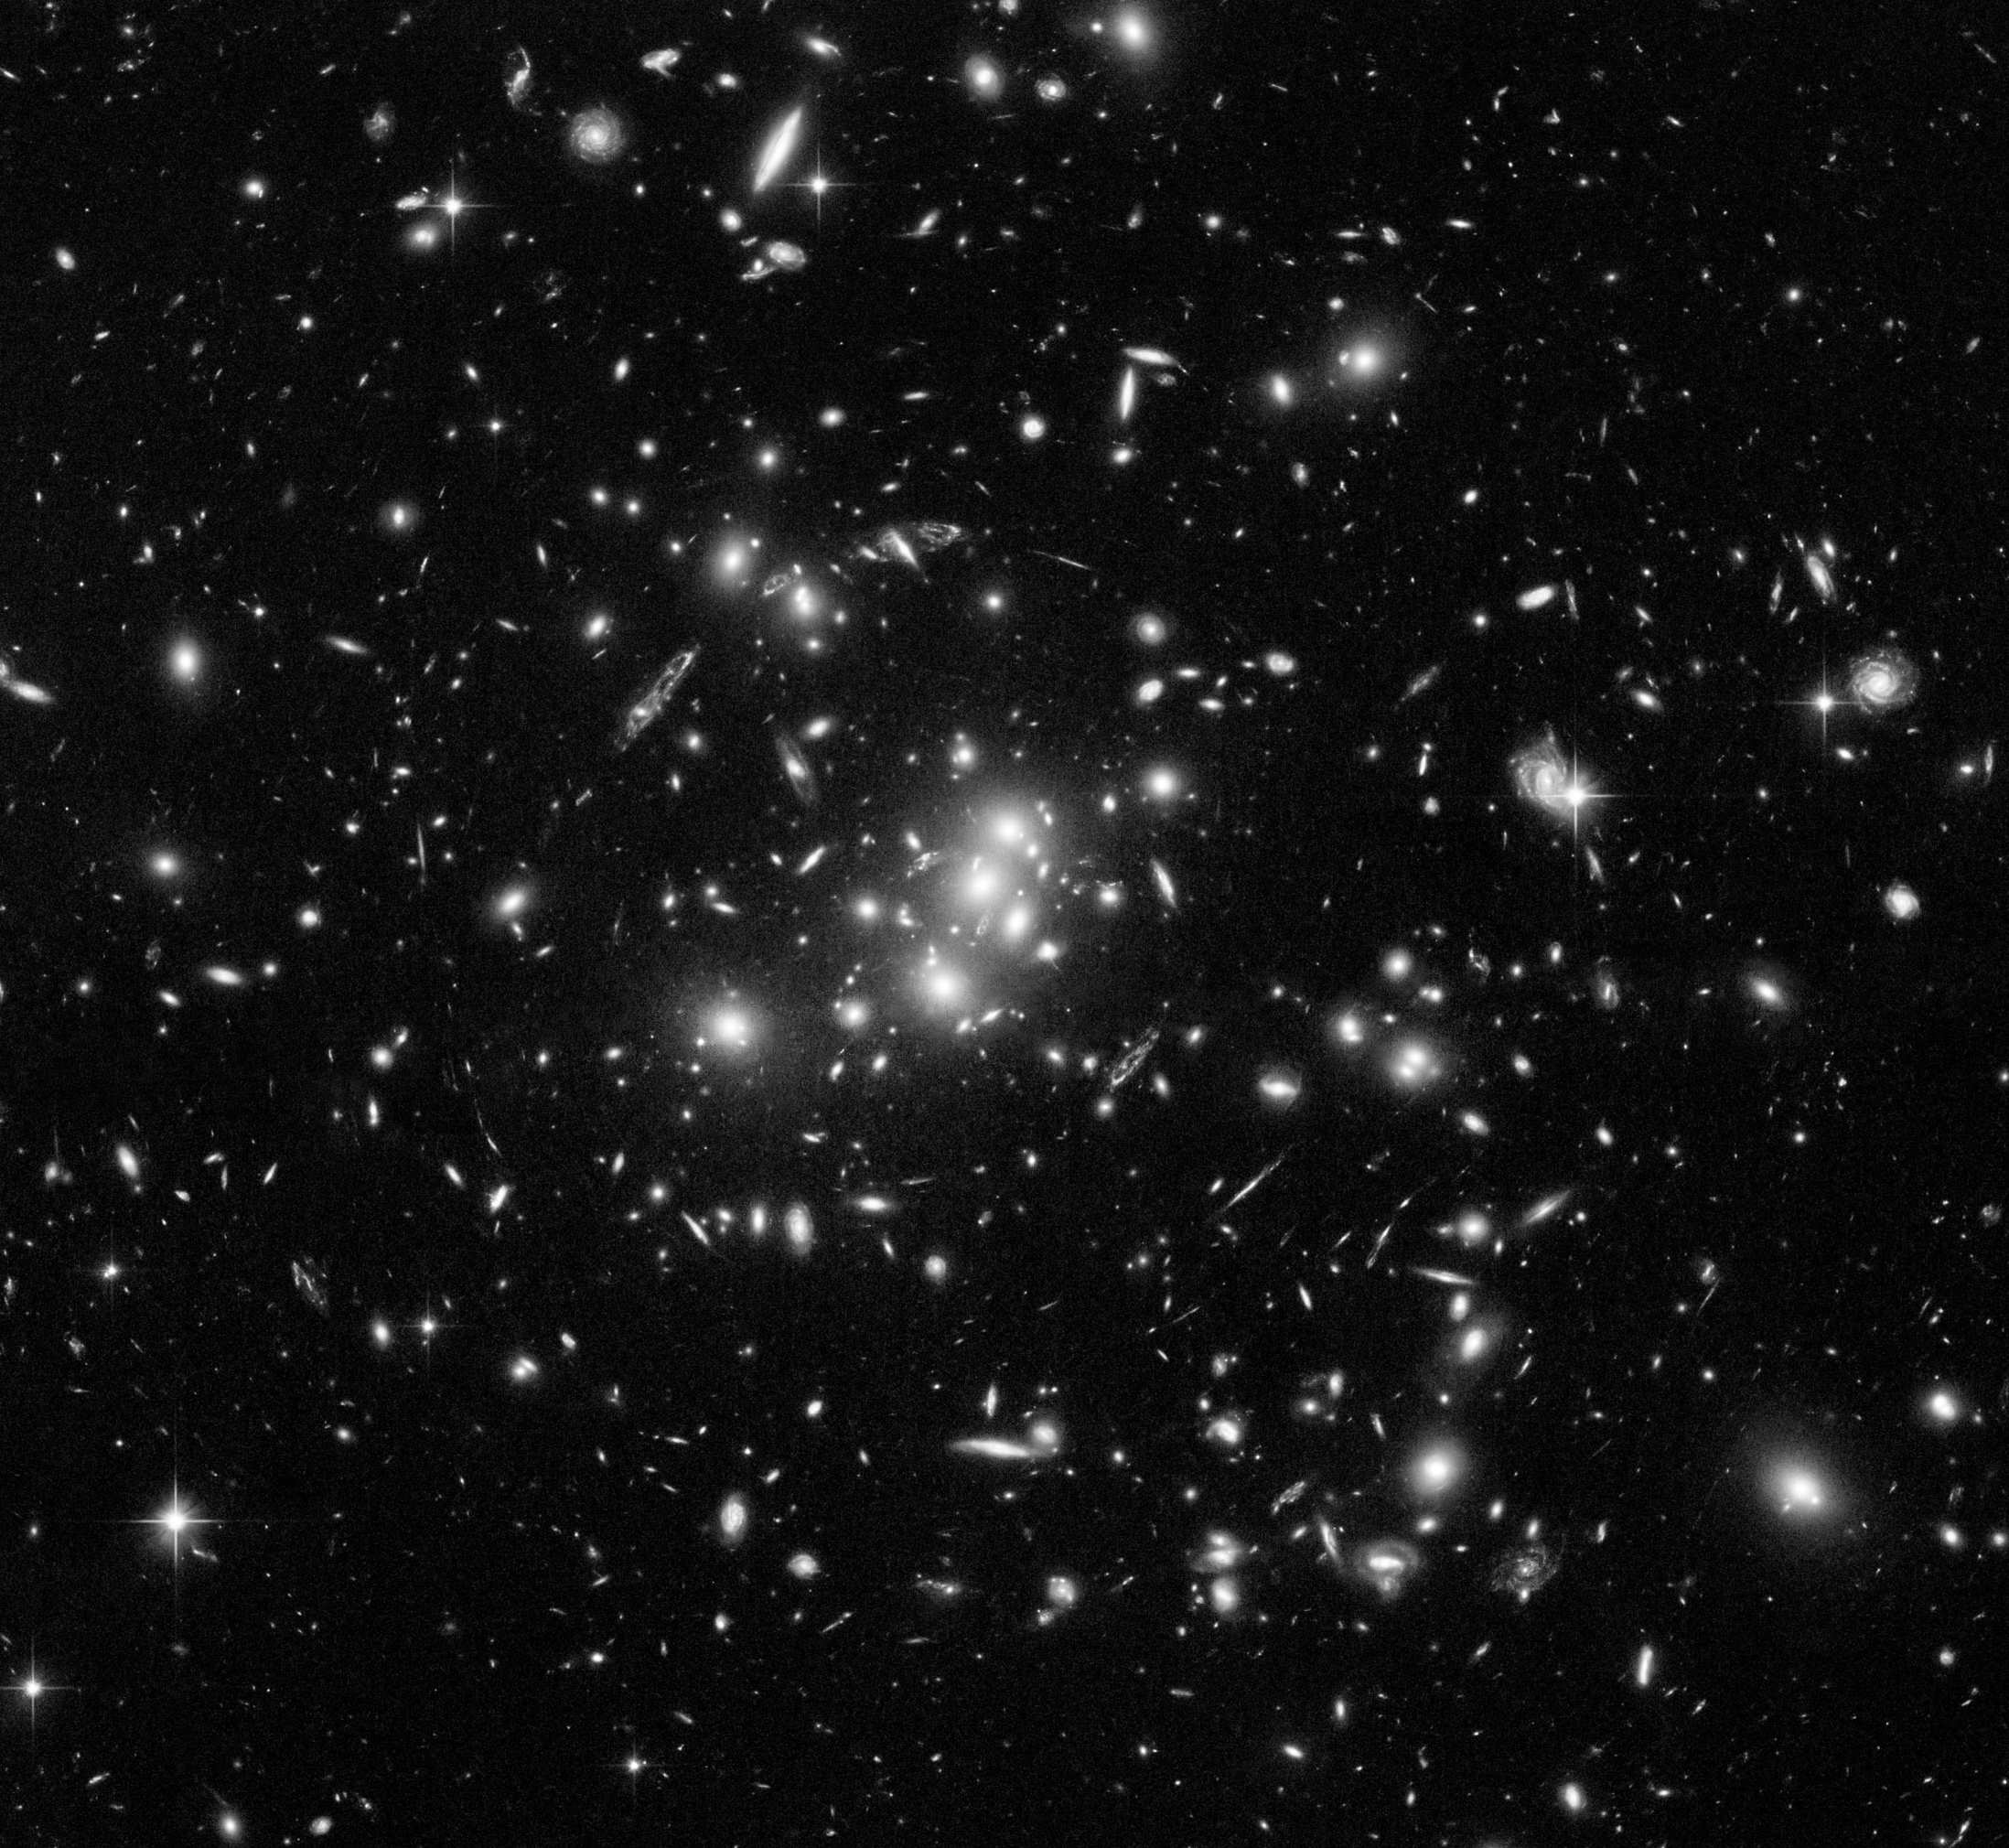 222 chapter 8: Samenvatting Figure 8.4: De cluster ZWCl 0024+1652. Bron: NASA/ESA/HST. stelsels.